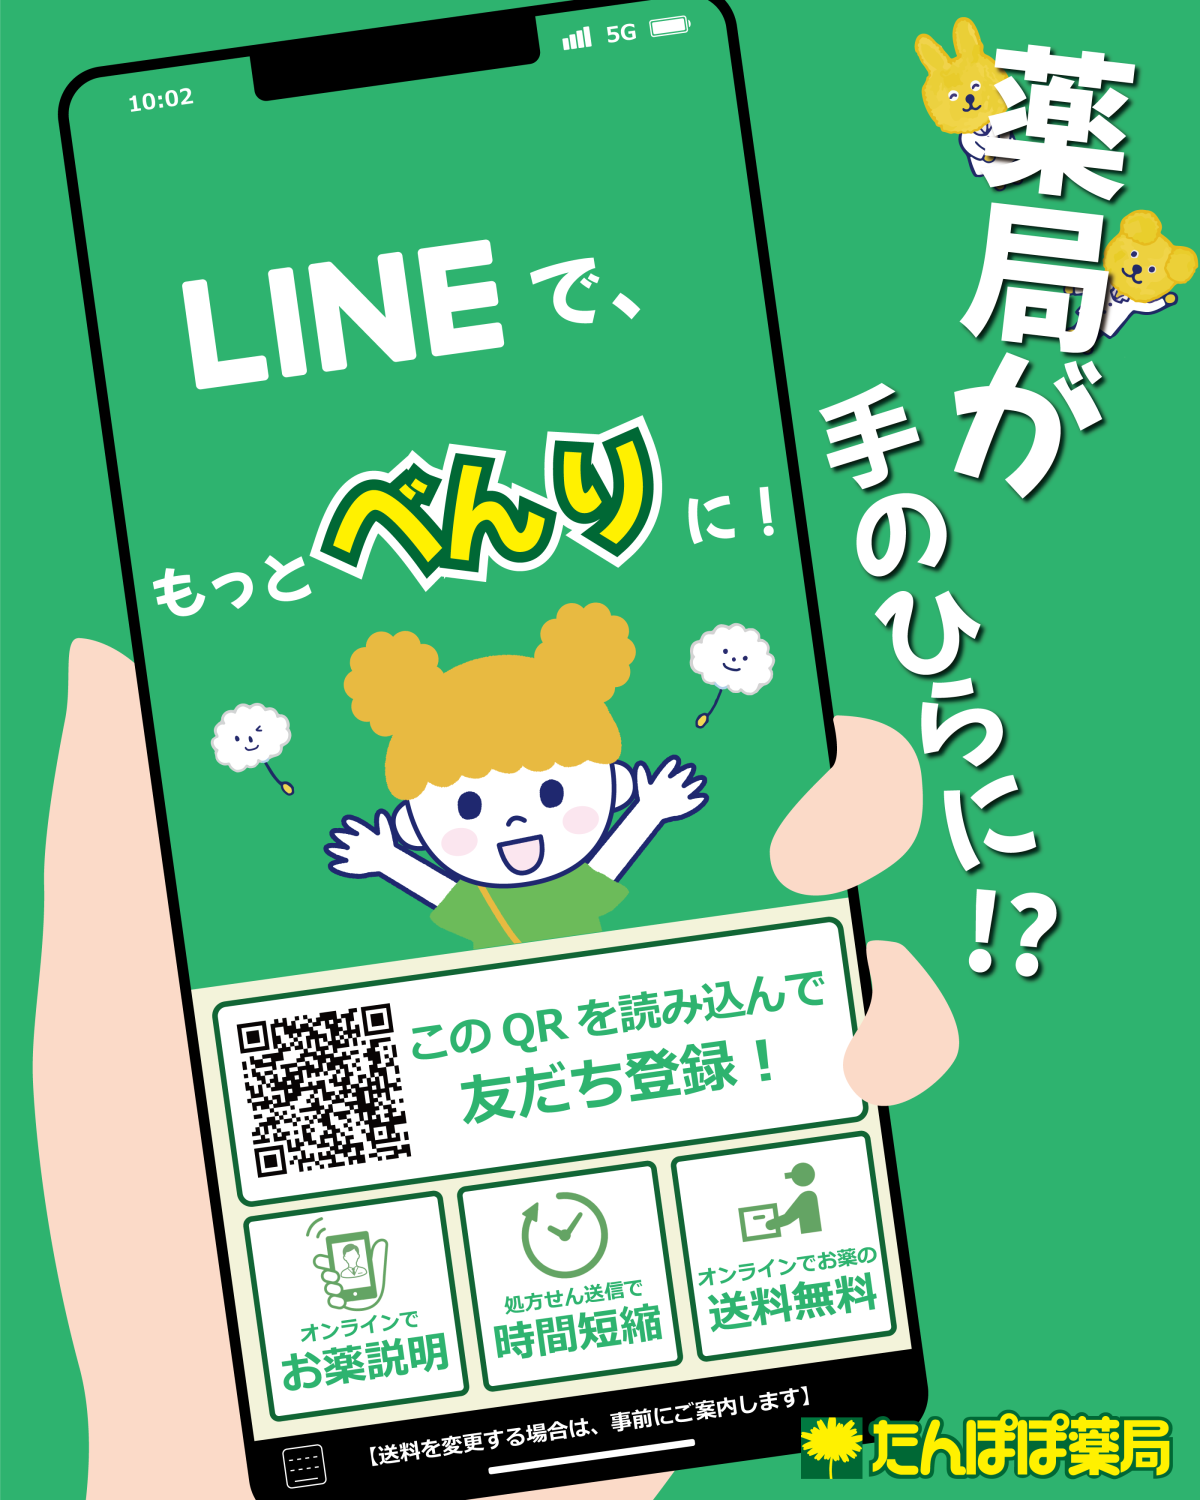 『たんぽぽ薬局LINE公式アカウント』開設